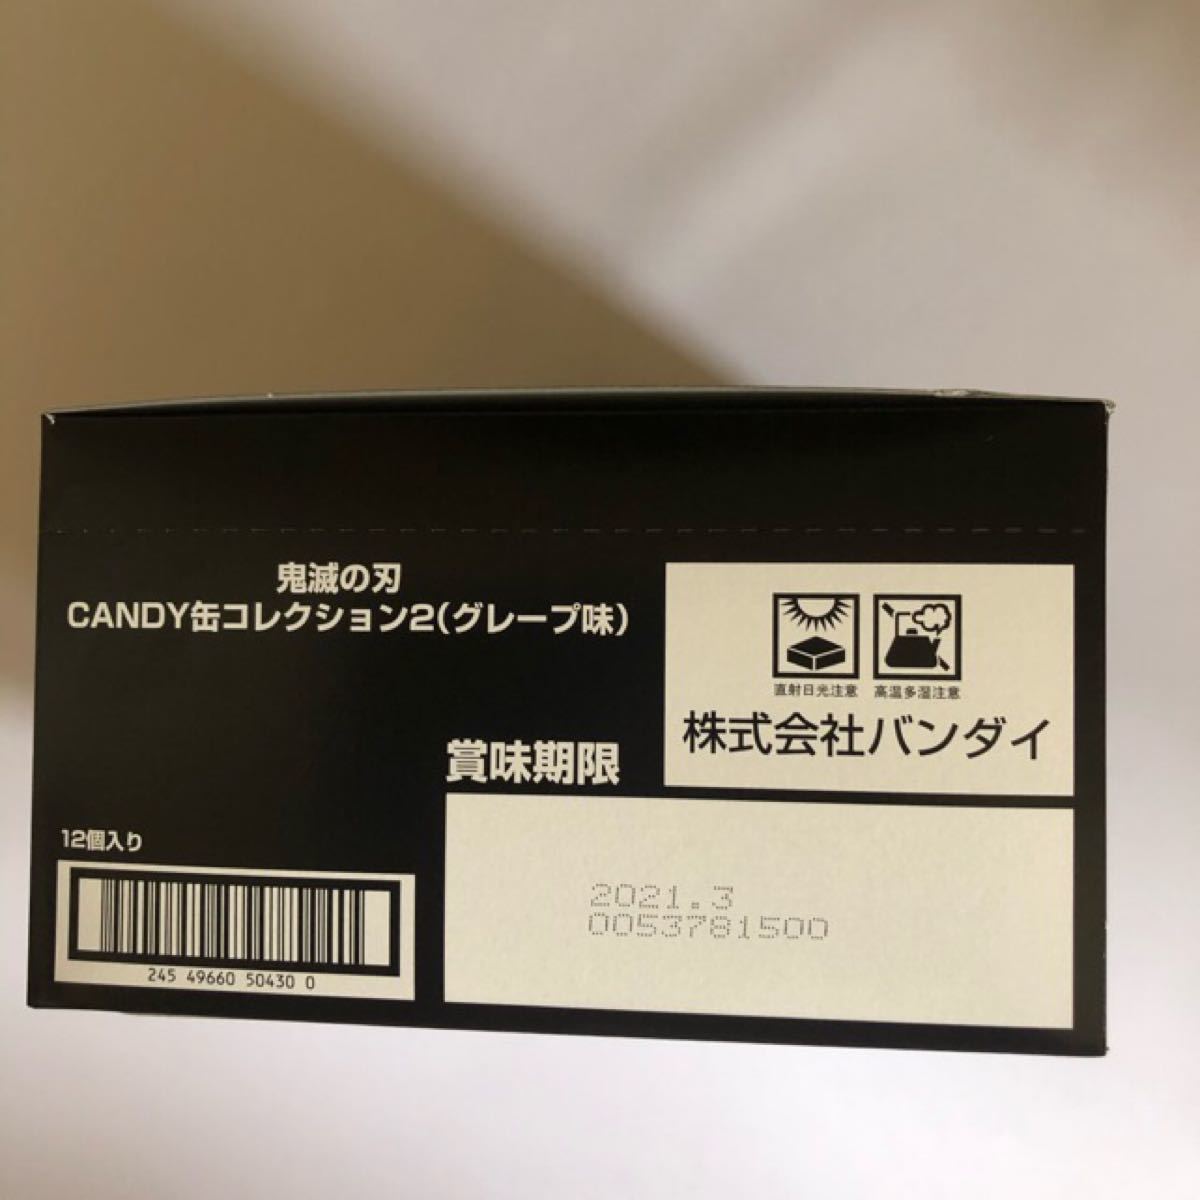 鬼滅の刃 CANDY缶コレクション2 (12個入) 食玩・キャンディ